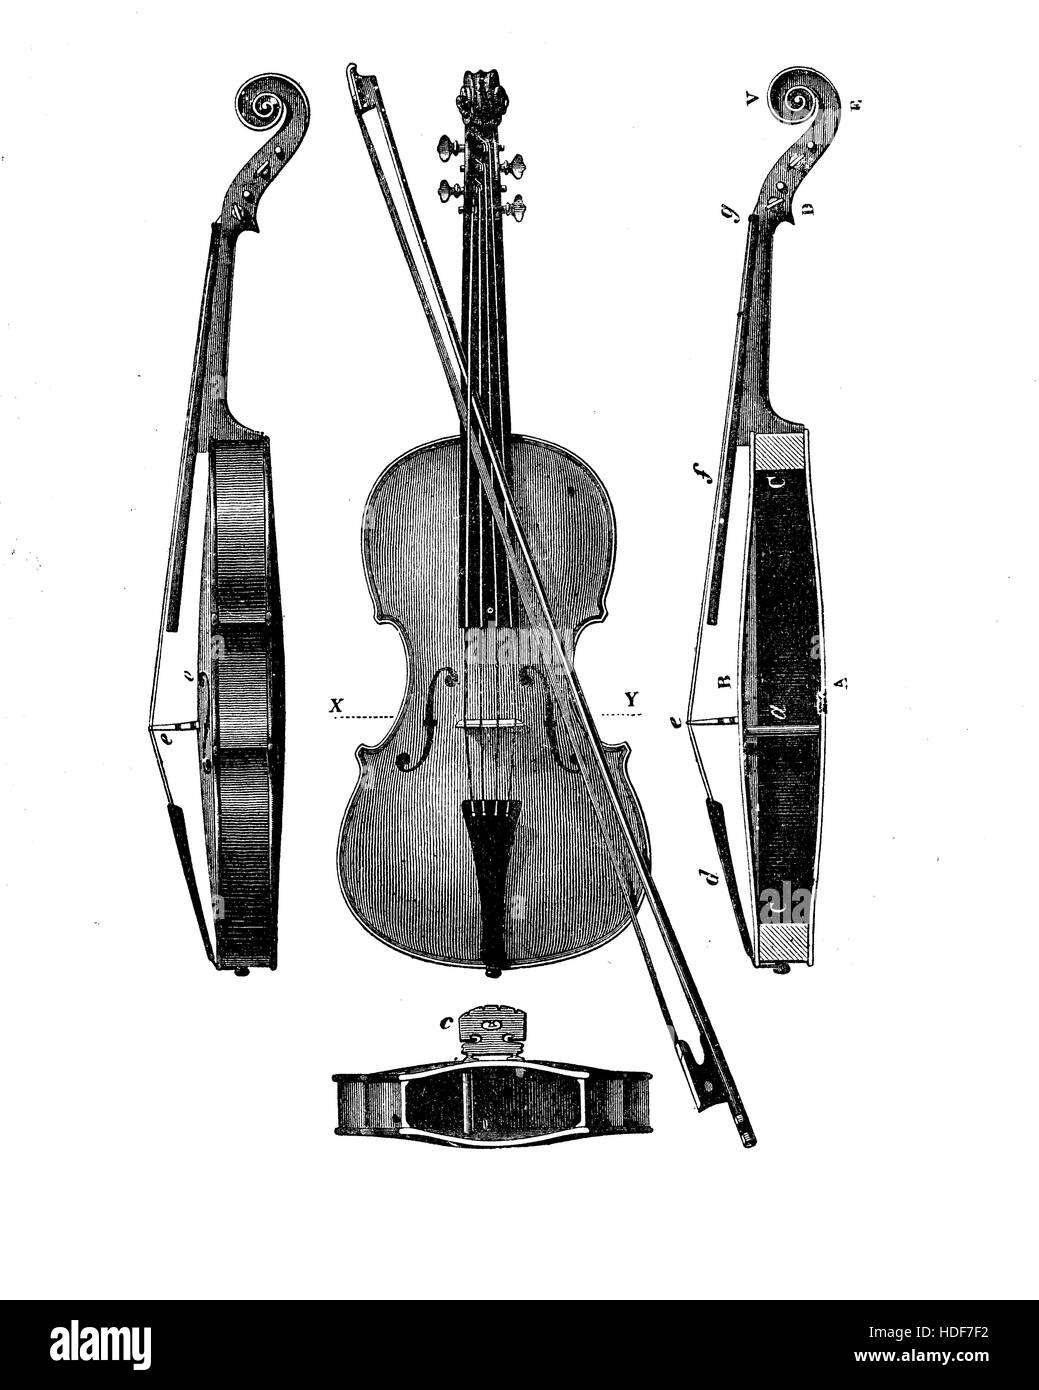 Gravure d'époque décrivant les détails de construction d'un violon de différents points de vue Banque D'Images